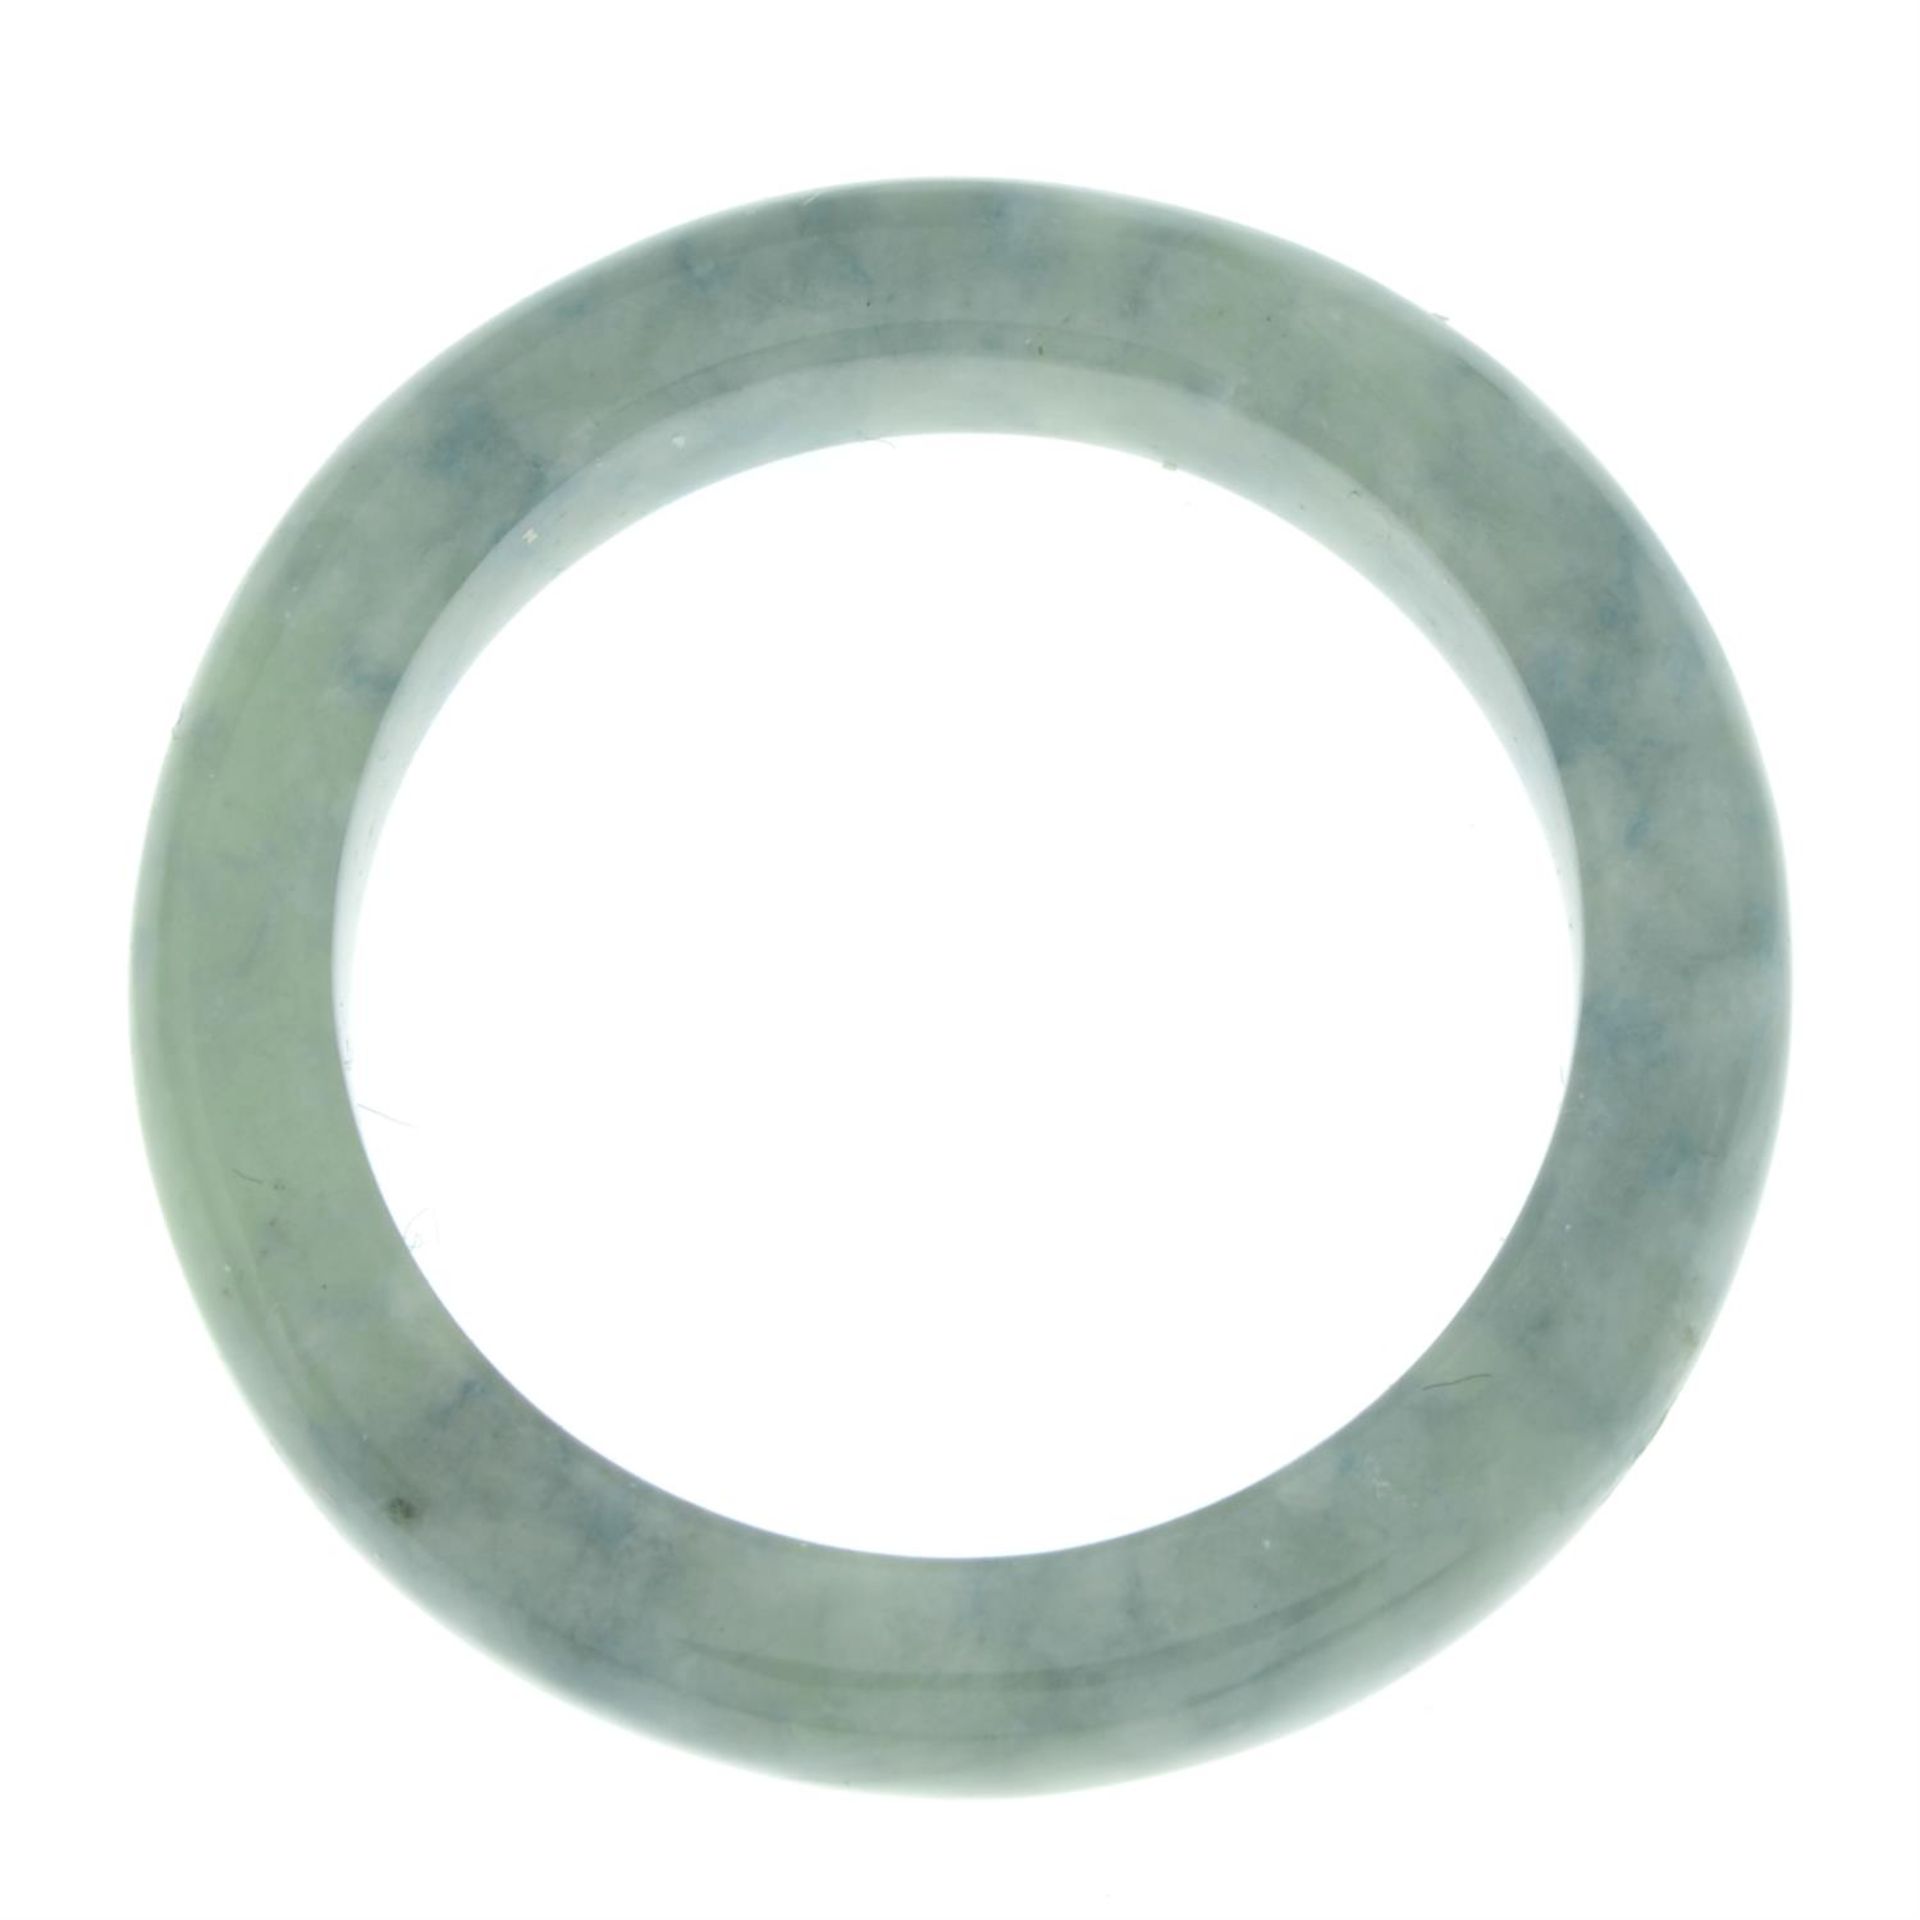 Jade band ring - Image 2 of 2